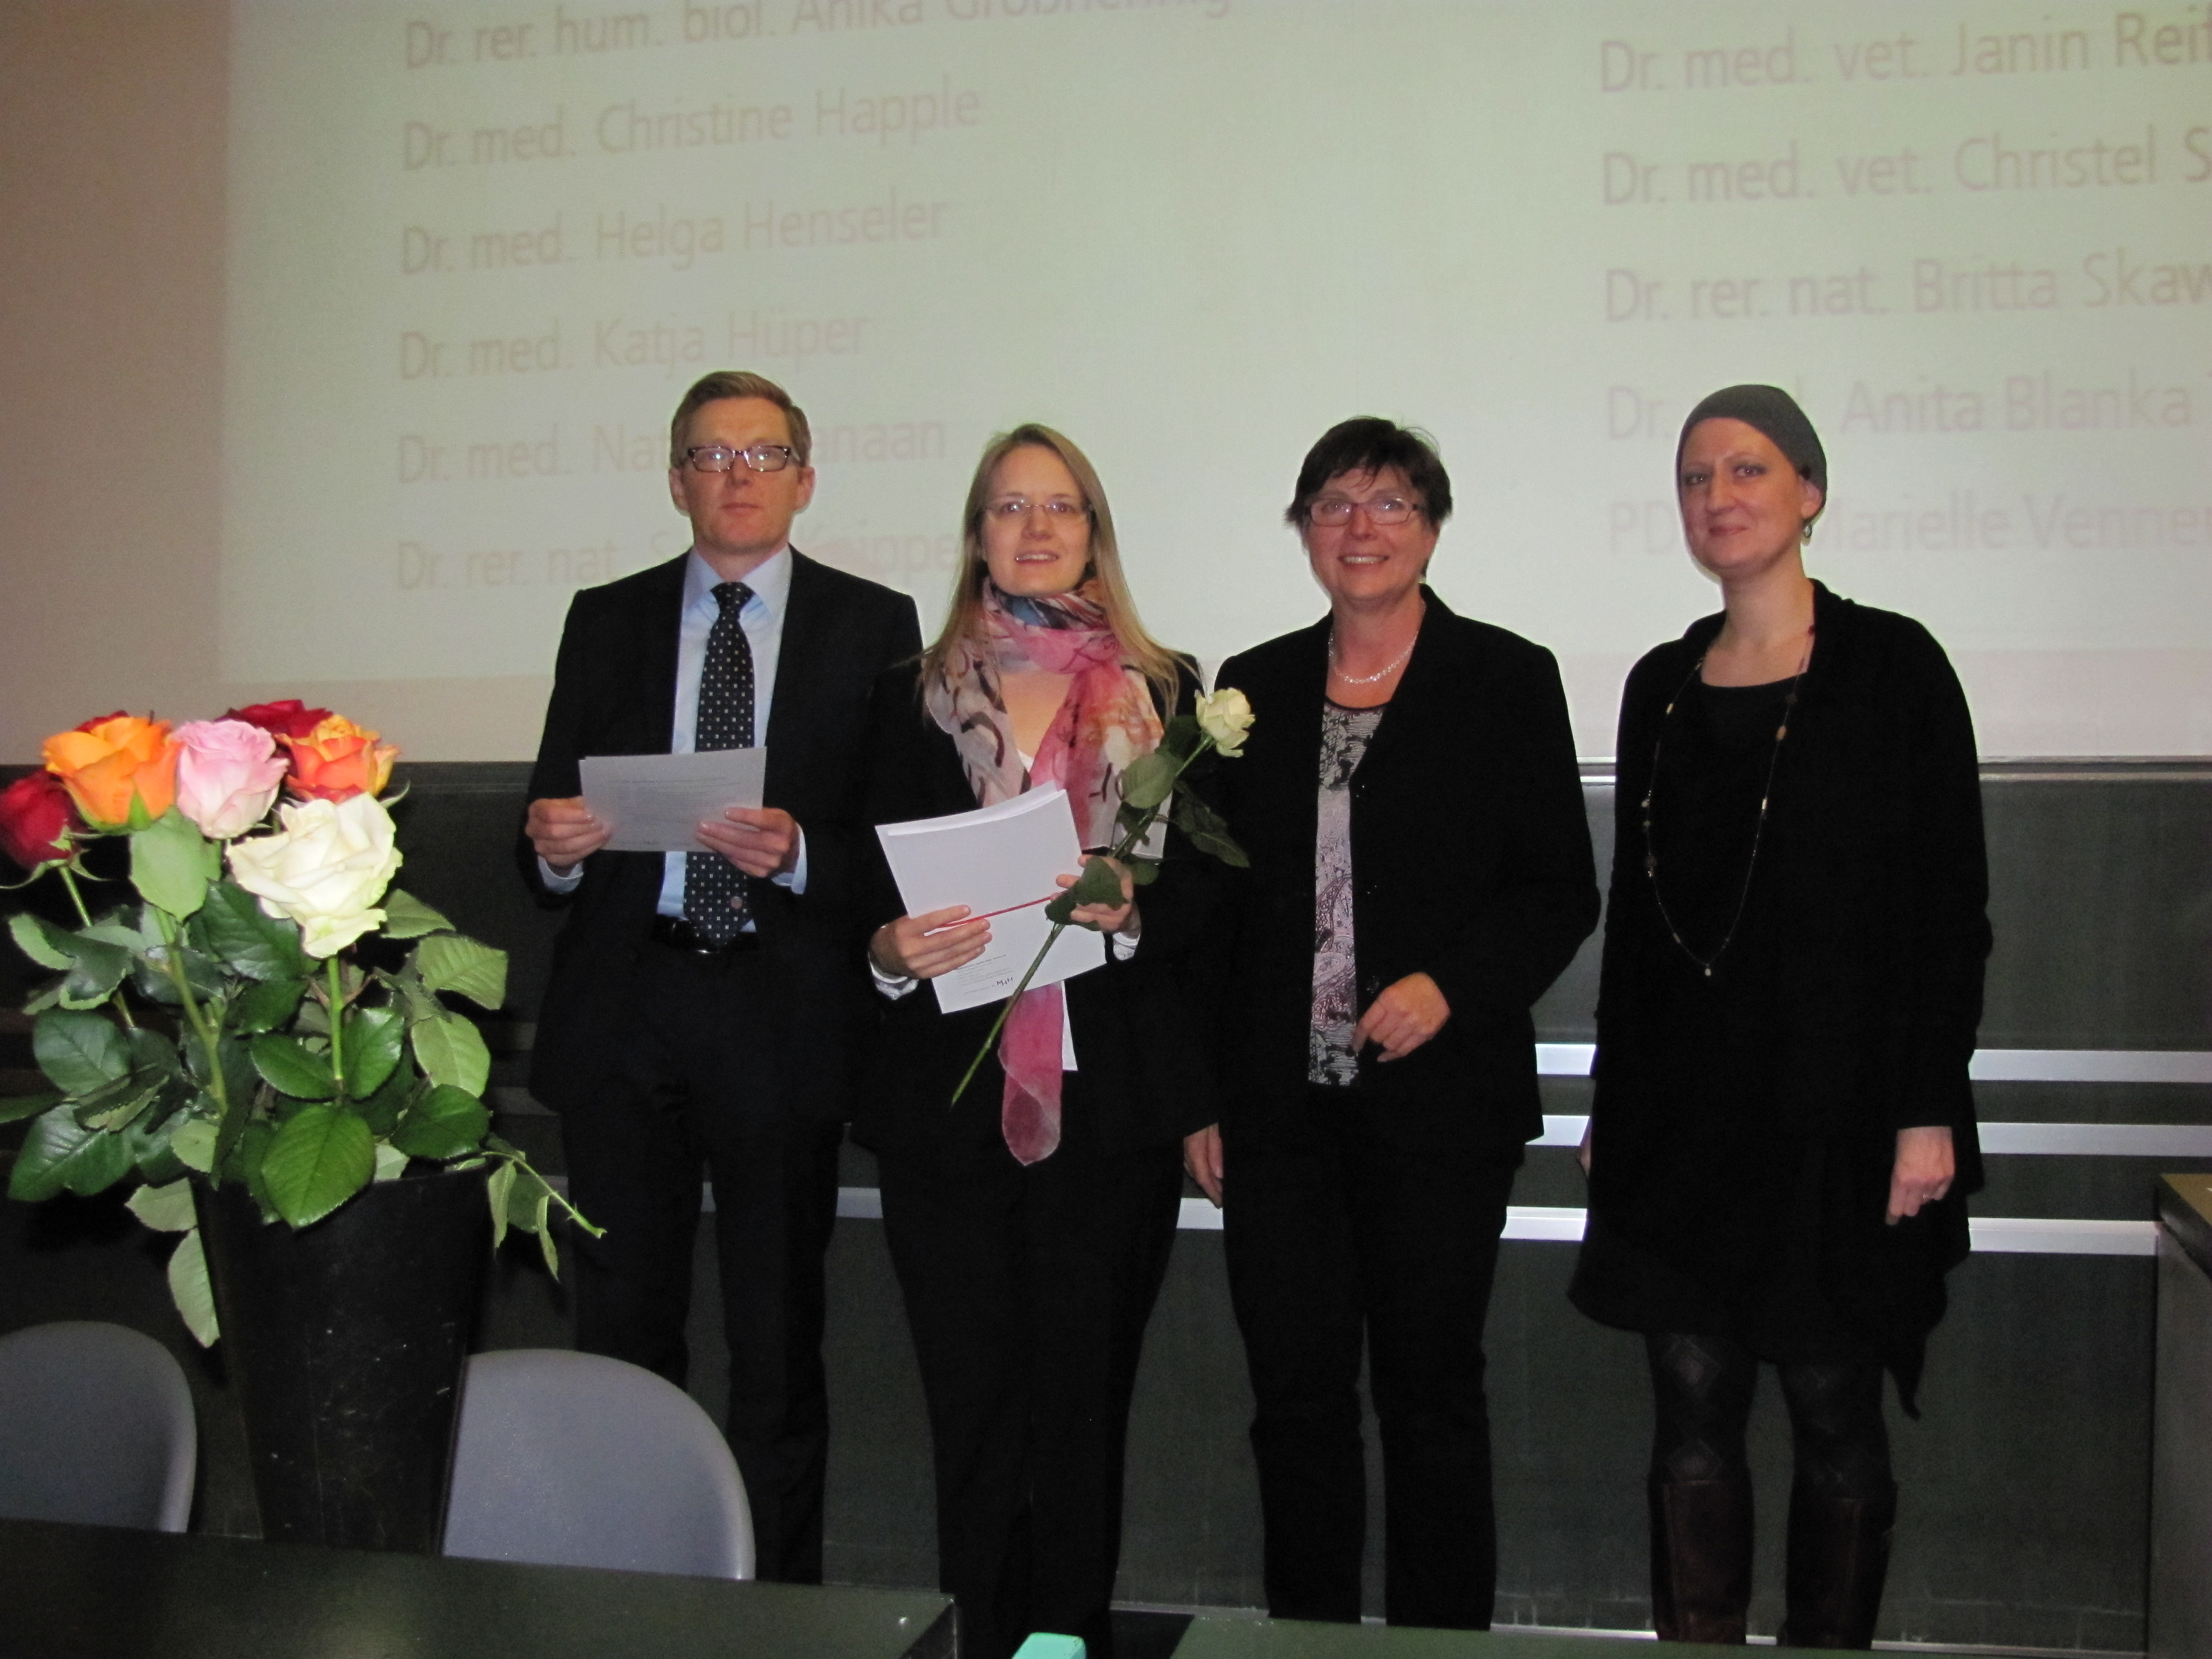 Vier Personen stehen vor einer Leinwand im Hörsaal, darunter Prof. Dr. Christopher Baum, später Präsident der MHH (2013 - 2018), die damalige Programmleitung Dr. Bärbel Miemietz und die damalige Programmkoordination Britta Möller. 